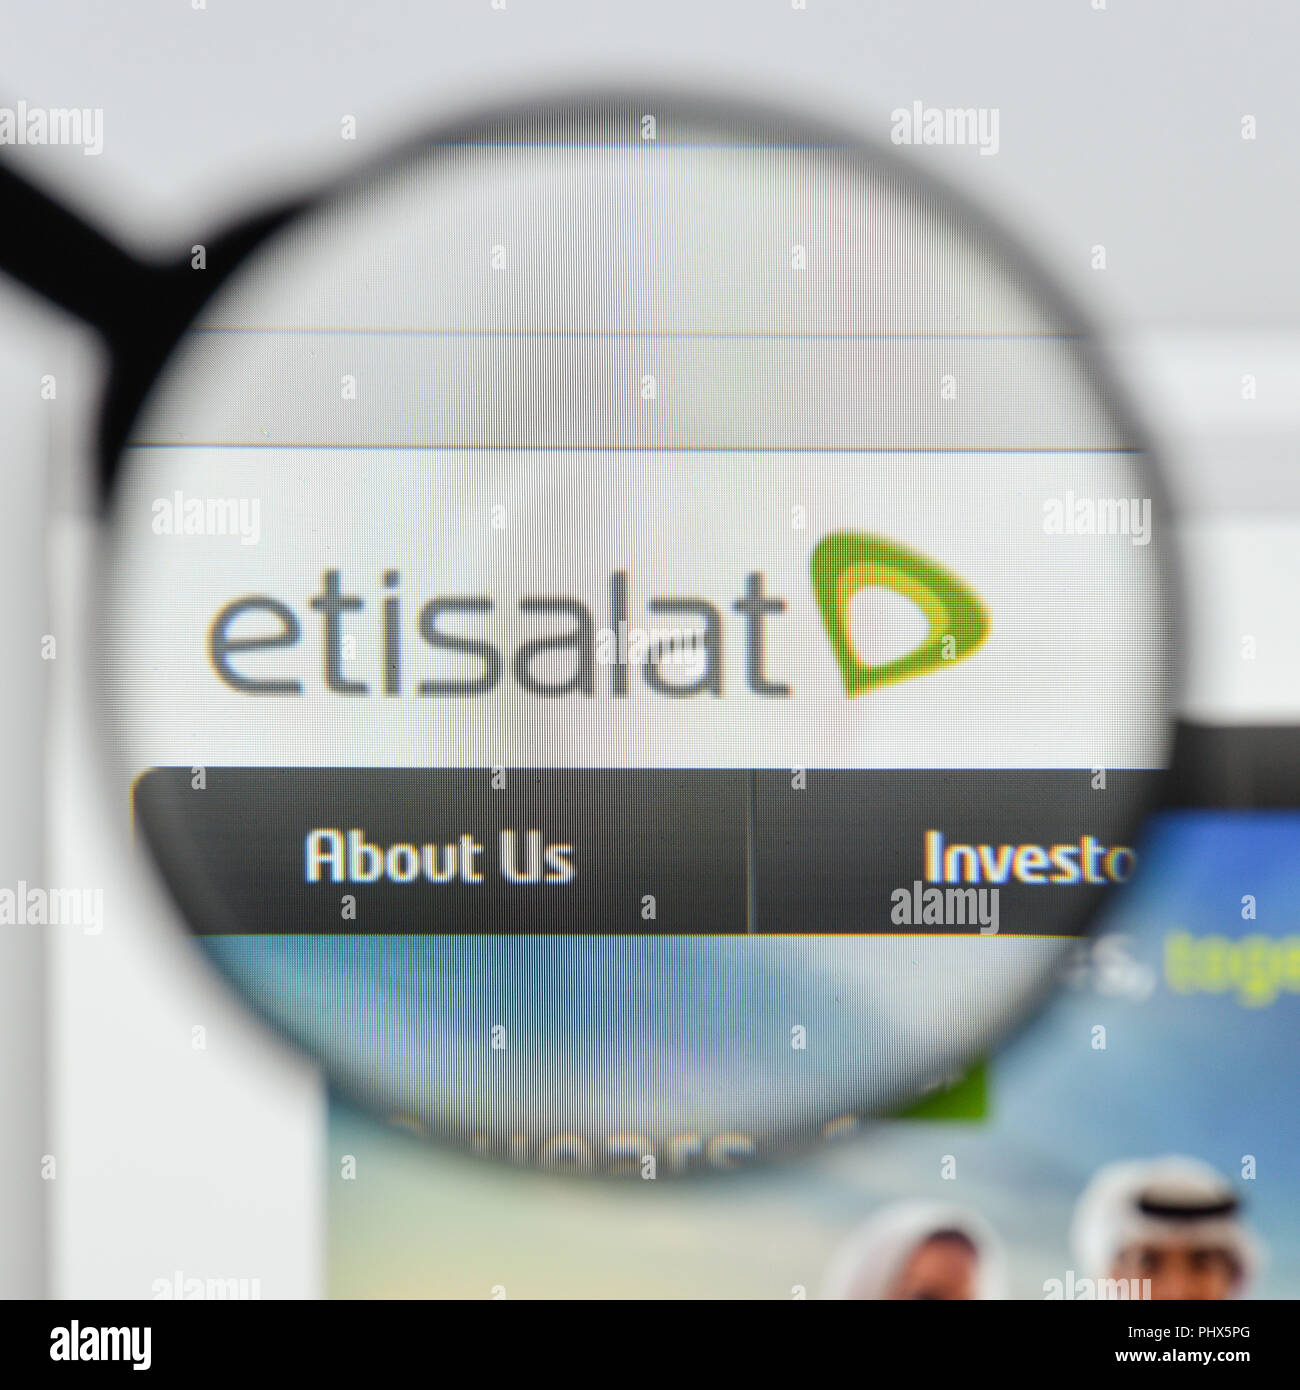 Milan, Italie - 20 août 2018 : Etisalat accueil du site. Logo Etisalat visible. Banque D'Images